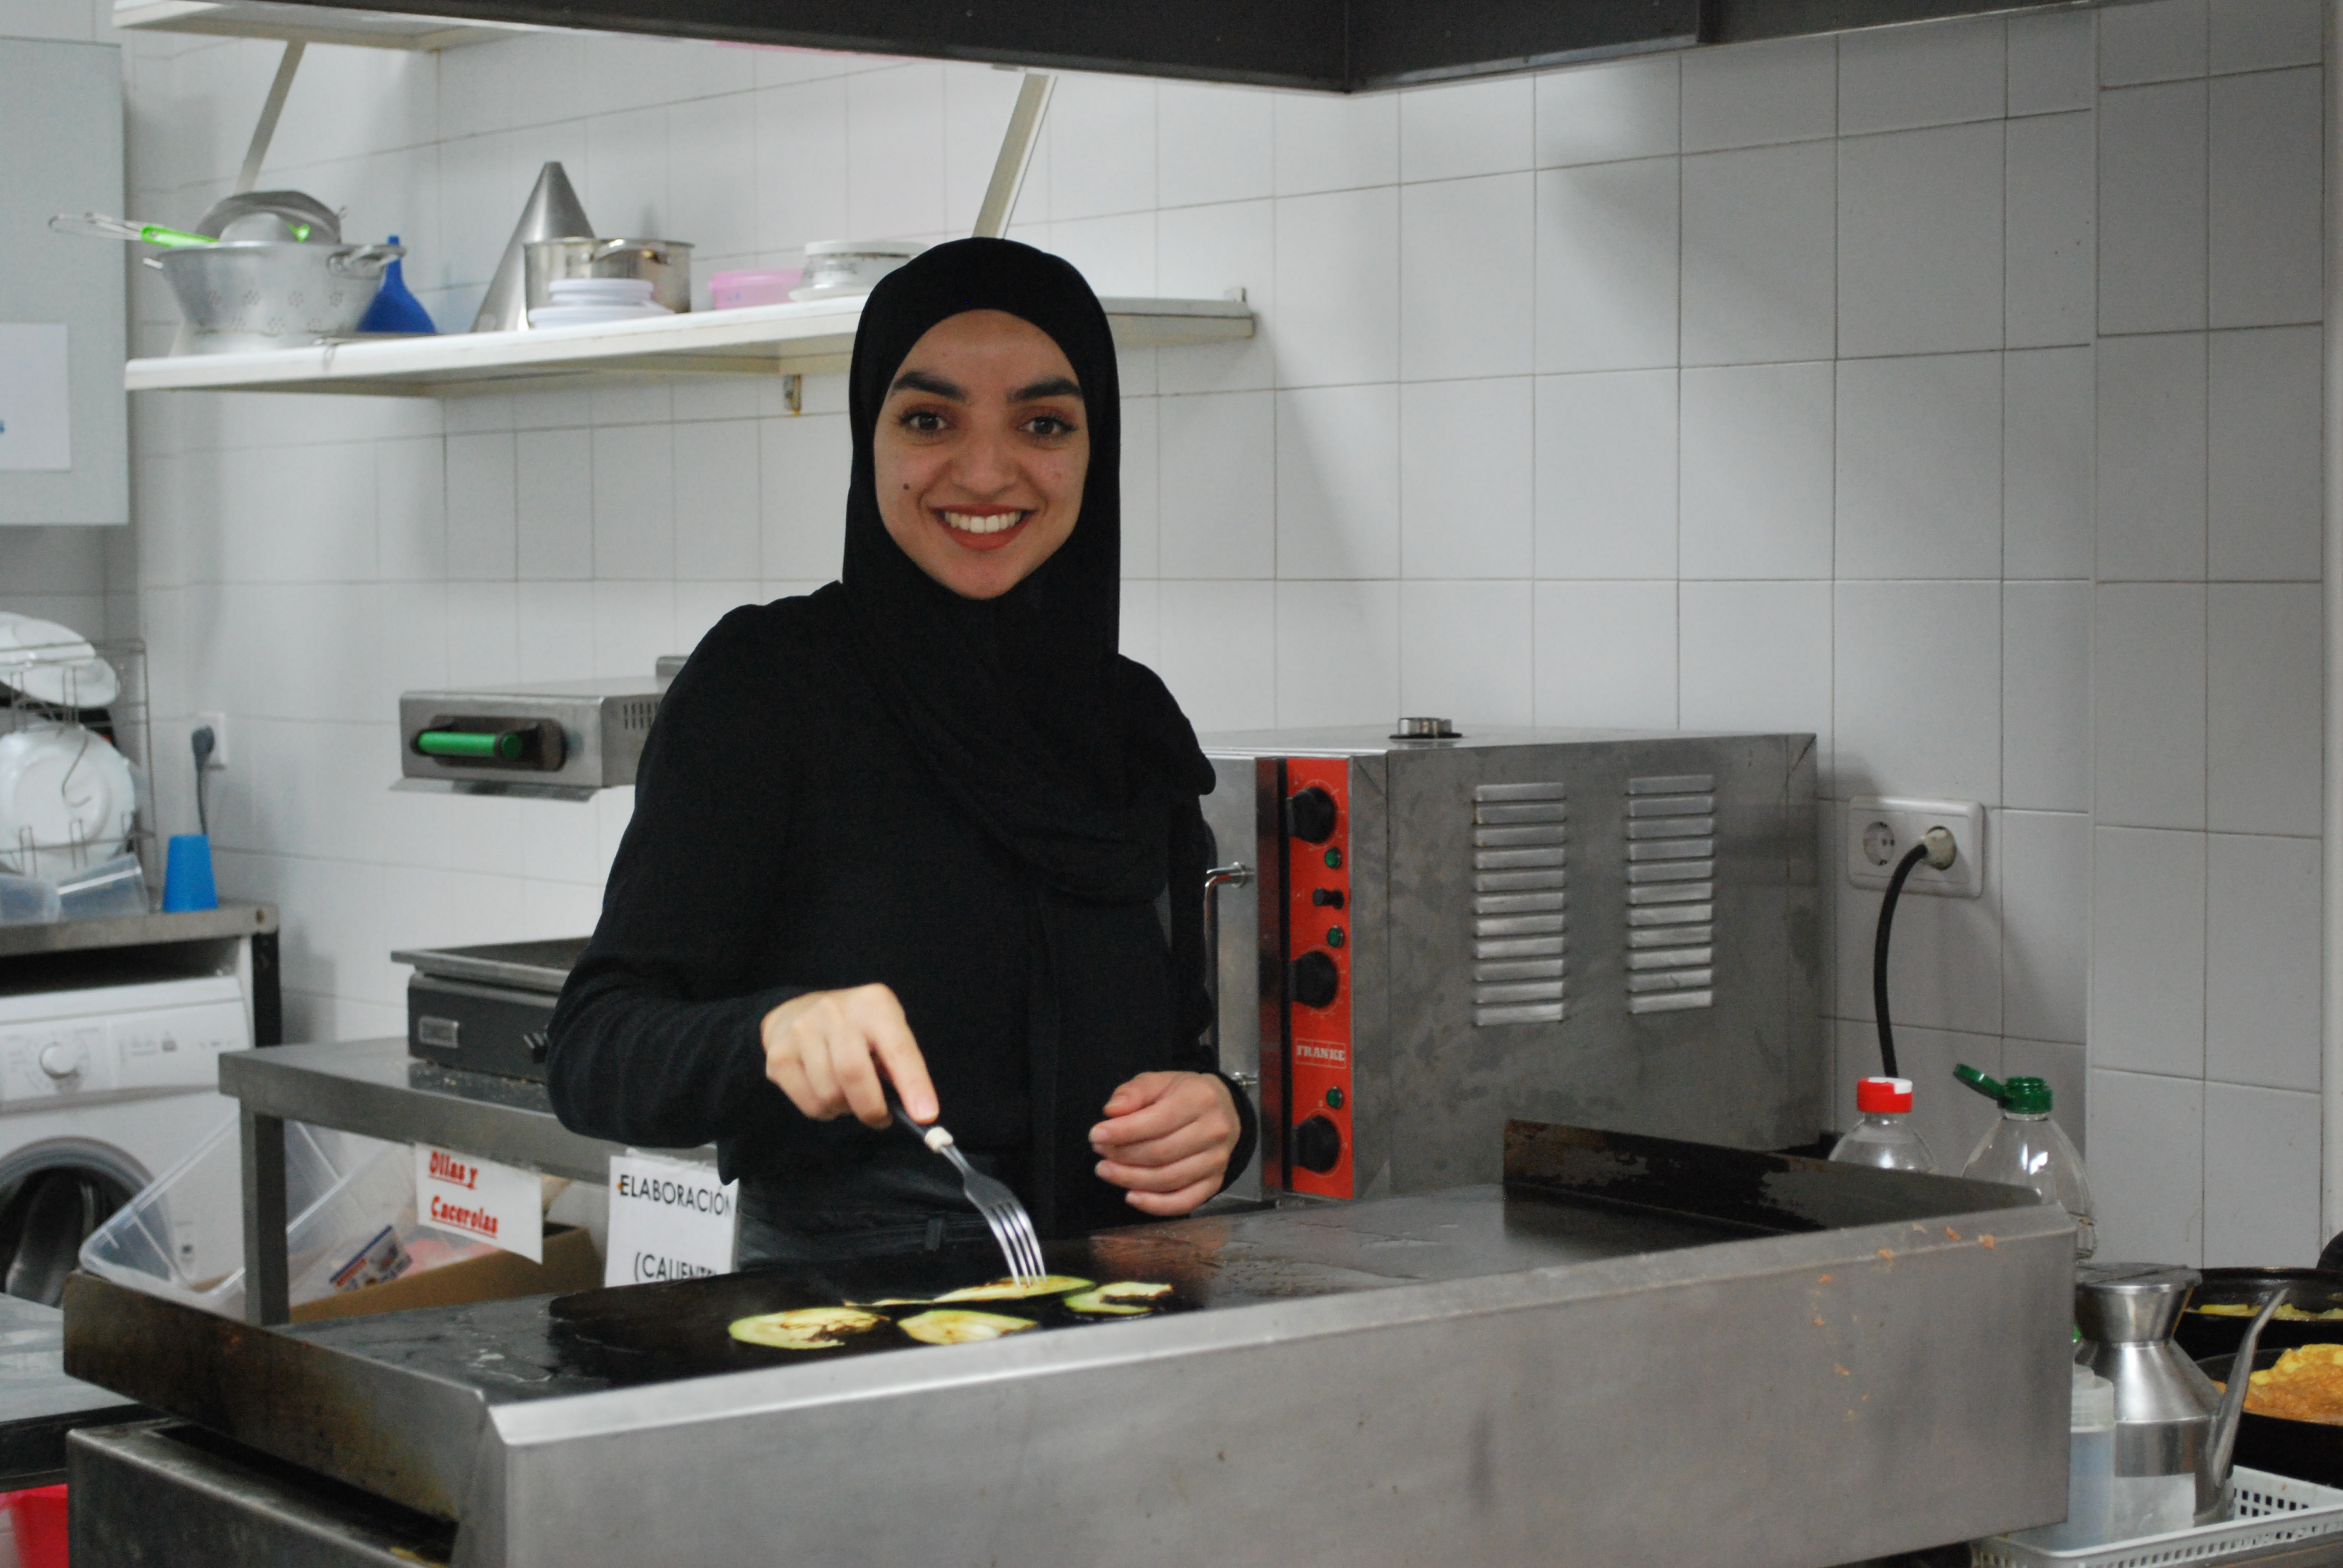 Una chica cocinando y sonriendo